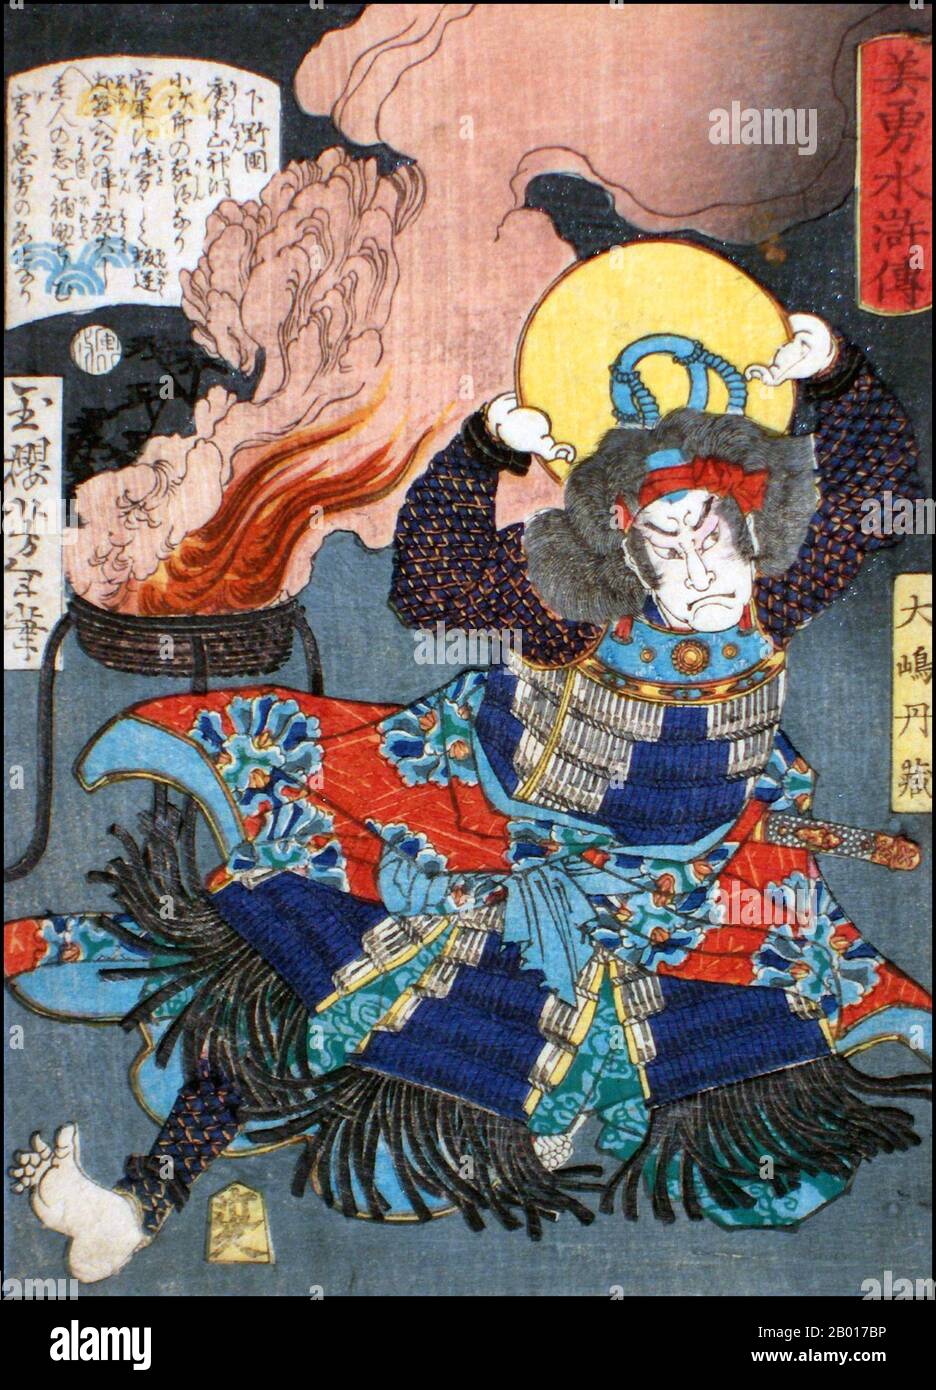 Japan: 'Der Bandit Chieftain Oshima Tanzo'. Ukiyo-e Holzschnitt aus der Serie 'Heroes of the Water Margin' von Tsukioka Yoshitoshi (1839. - 9. Juni 1892), 1866. Tsukioka Yoshitoshi, auch Taiso Yoshitoshi genannt, war ein japanischer Künstler. Er ist weithin als der letzte große Meister des japanischen Holzschnitts Ukiyo-e anerkannt. Er gilt zudem als einer der größten Innovatoren der Form. Seine Karriere umfasste zwei Epochen – die letzten Jahre des feudalen Japans und die ersten Jahre des modernen Japans nach der Meiji-Restauration. Stockfoto